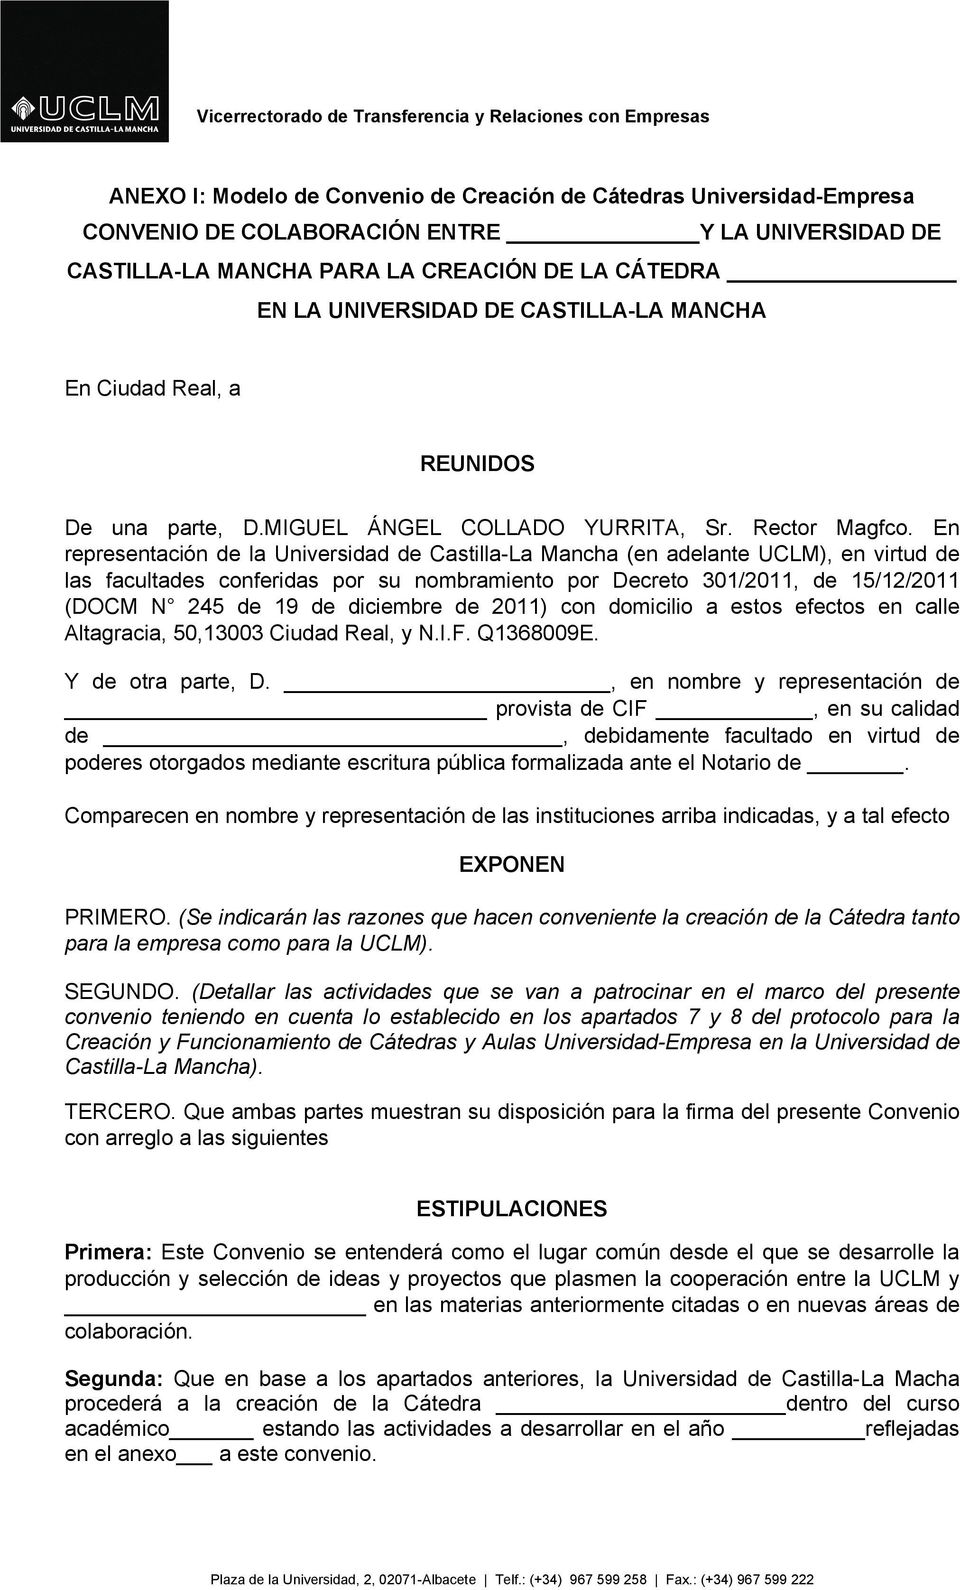 En representación de la Universidad de Castilla-La Mancha (en adelante UCLM), en virtud de las facultades conferidas por su nombramiento por Decreto 301/2011, de 15/12/2011 (DOCM N 245 de 19 de